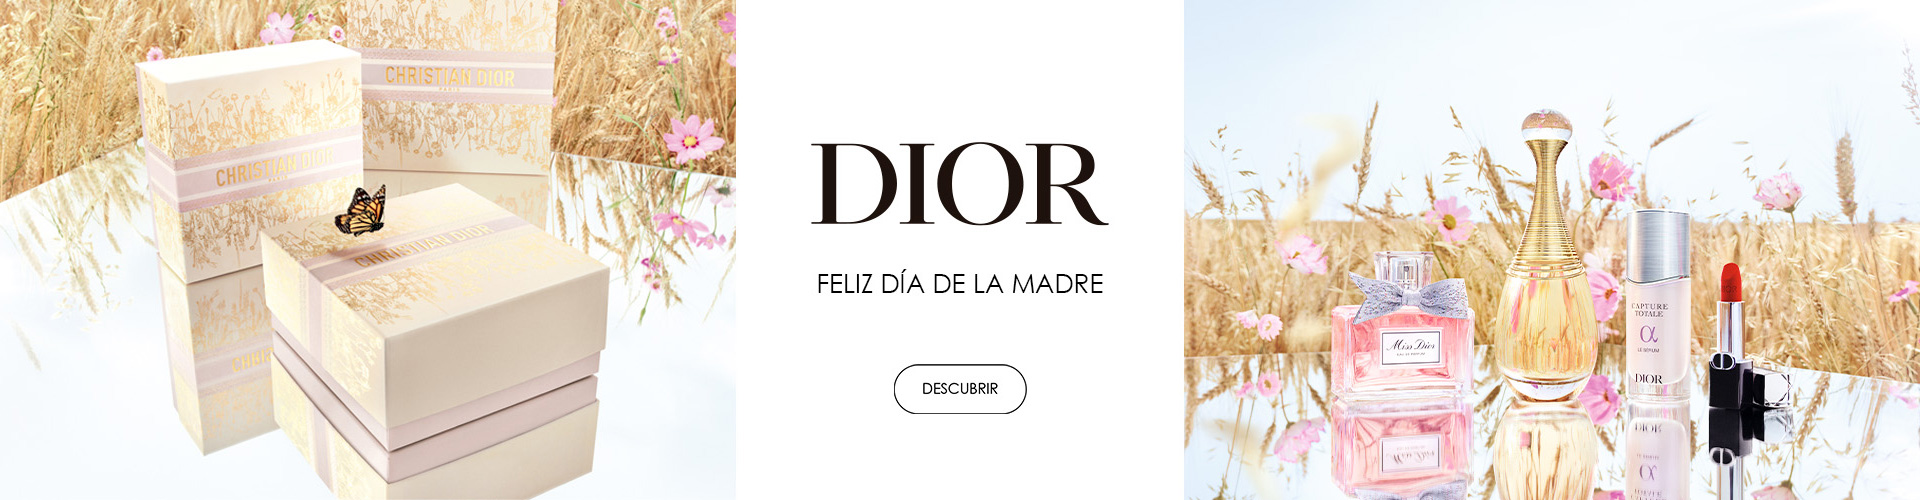 Dior | Especial Día de la Madre | Prieto.es